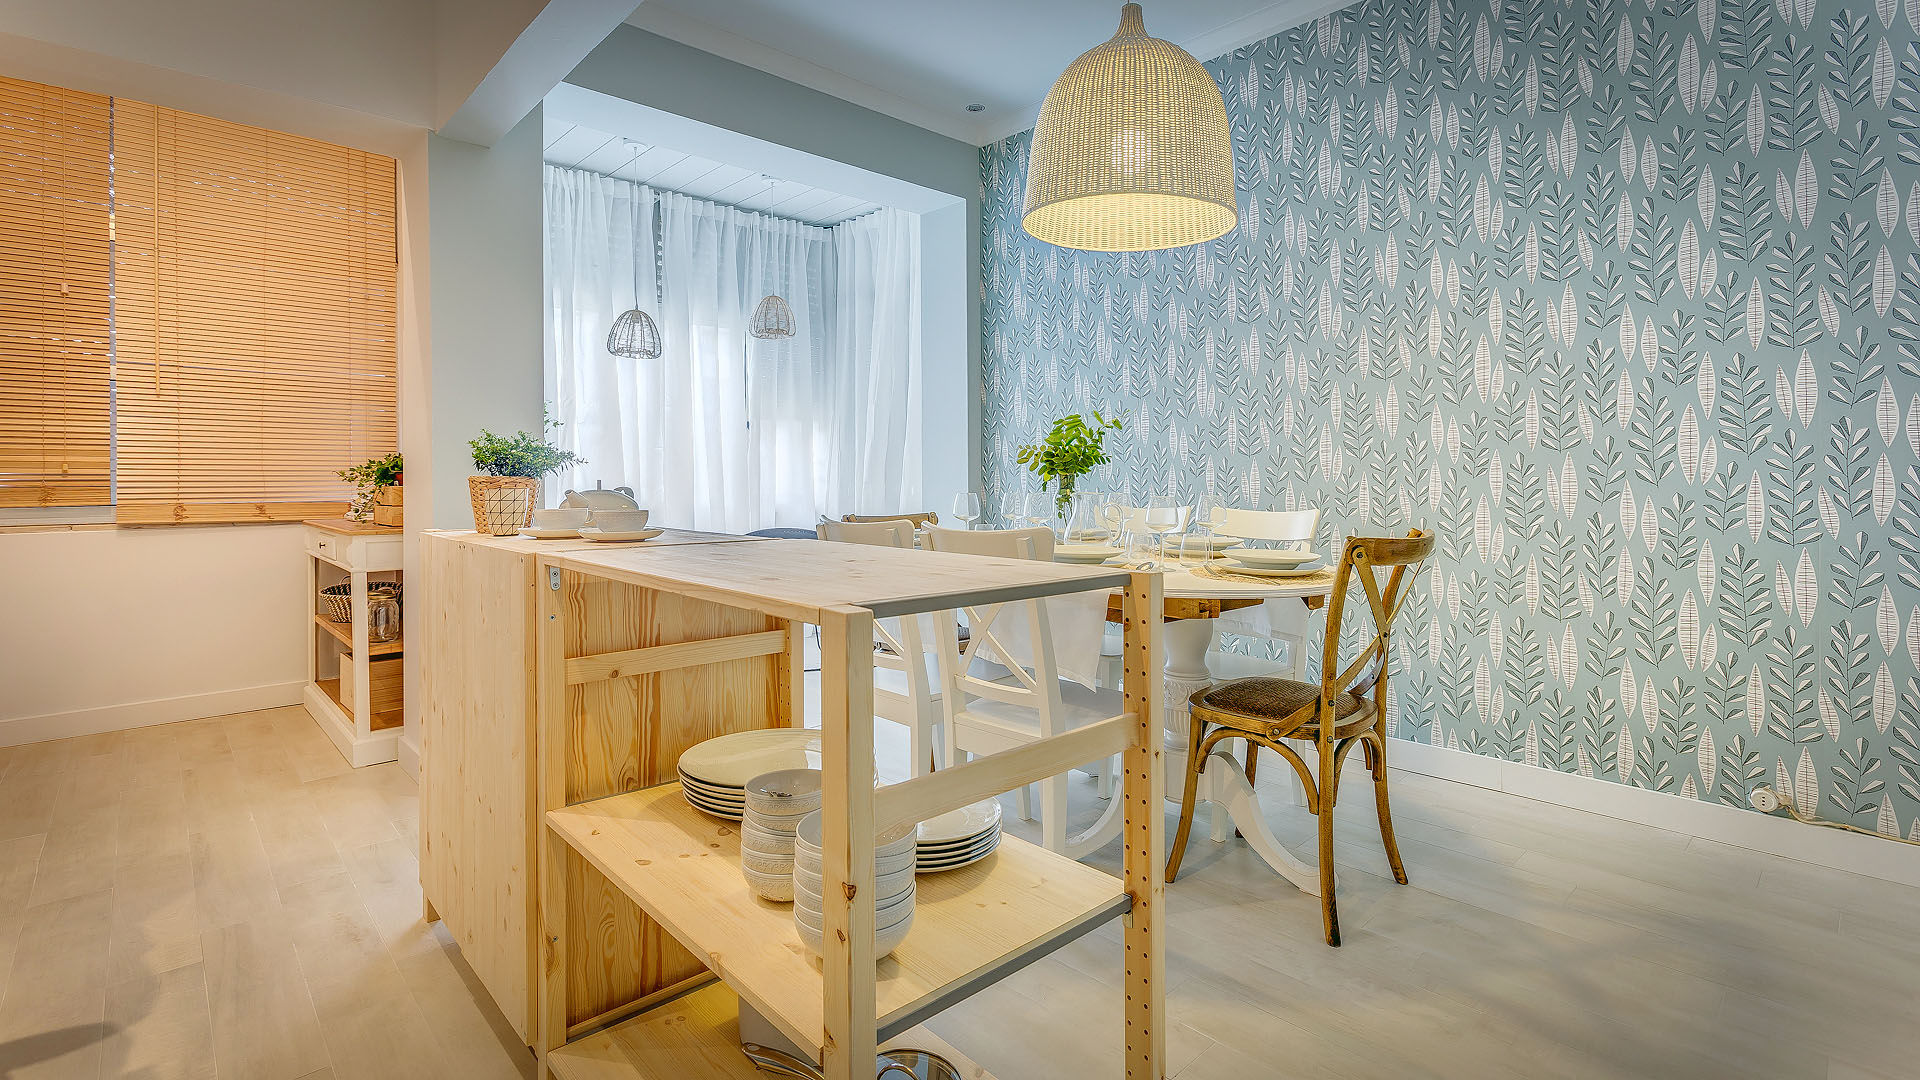 Querido Mudei a Casa - Episódio #2421, Homestories Homestories Cocinas de estilo escandinavo